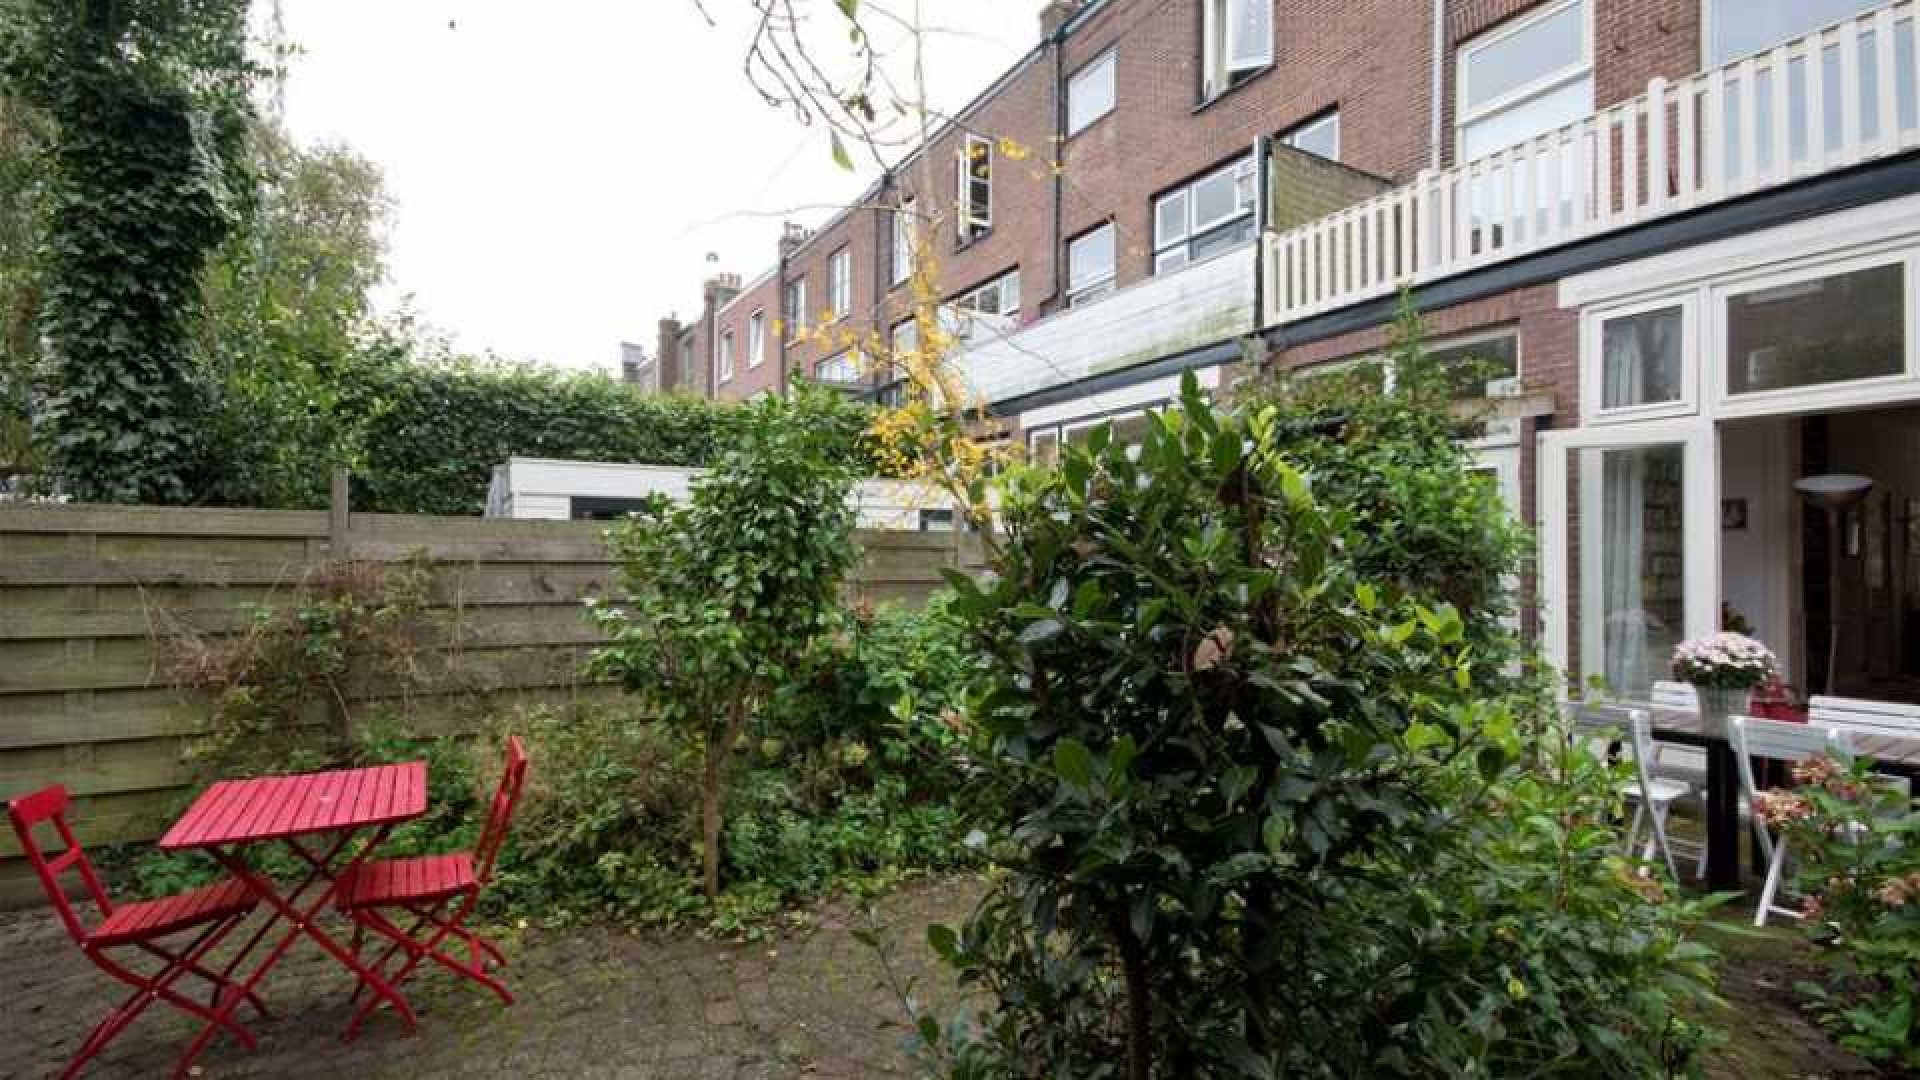 Familie zet huis Joost Zwagerman te koop. Zie foto's